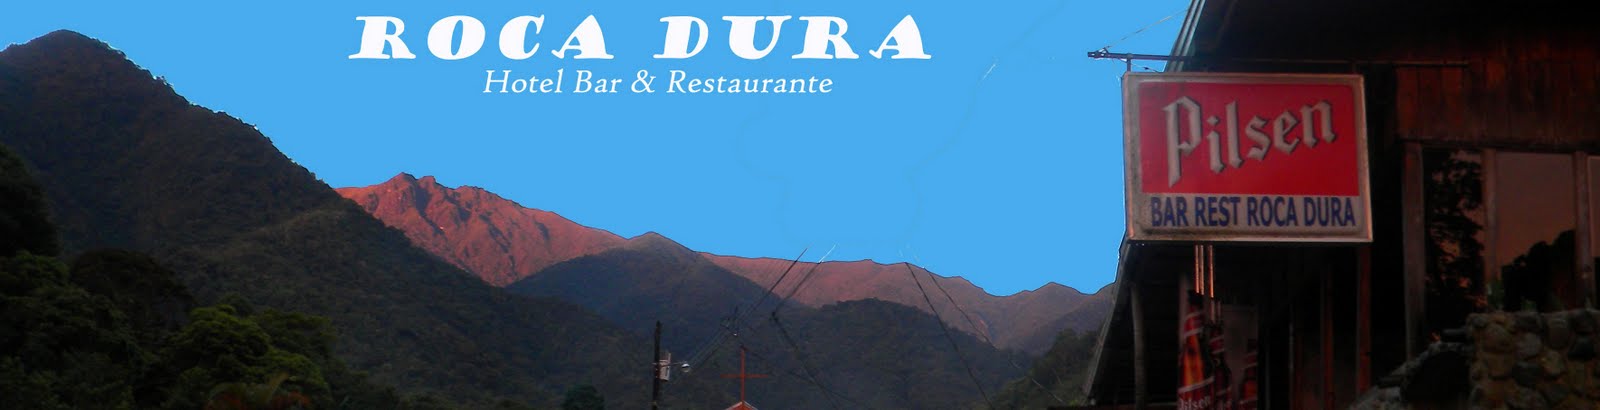 Roca Dura Hotel Bar & Restaurante